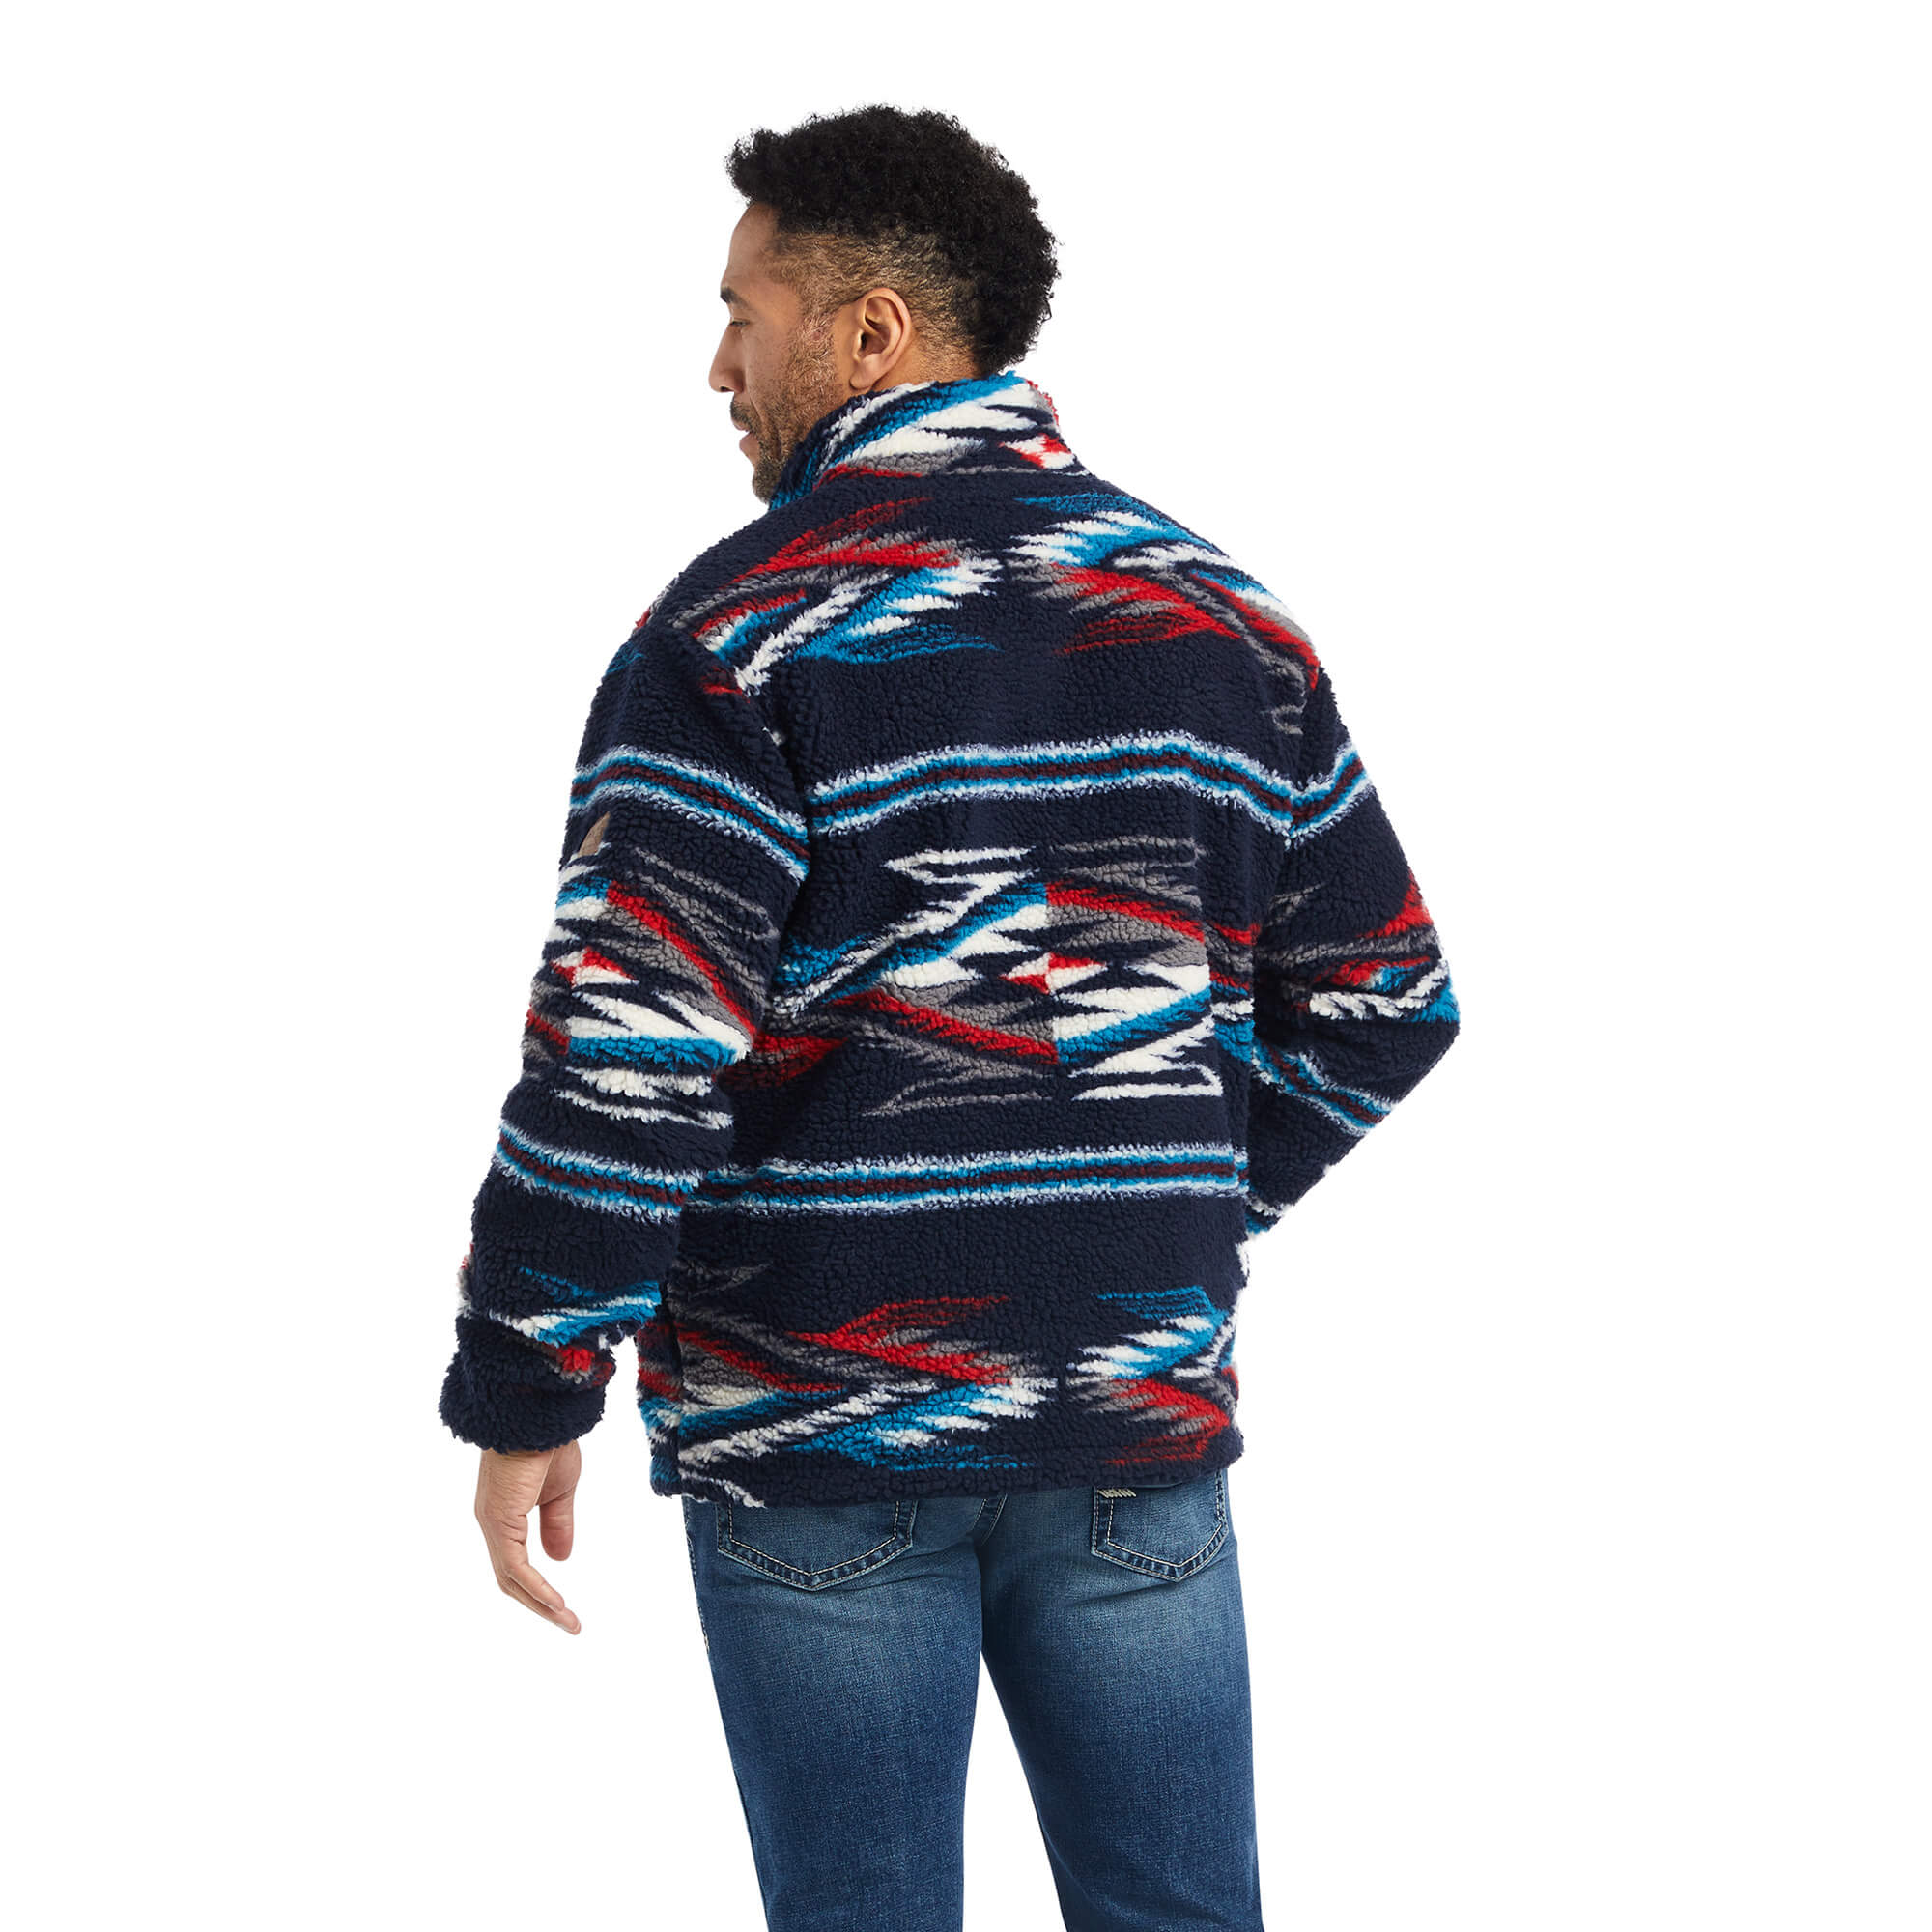 Ariat Men's Chimayo Fleece Jacket